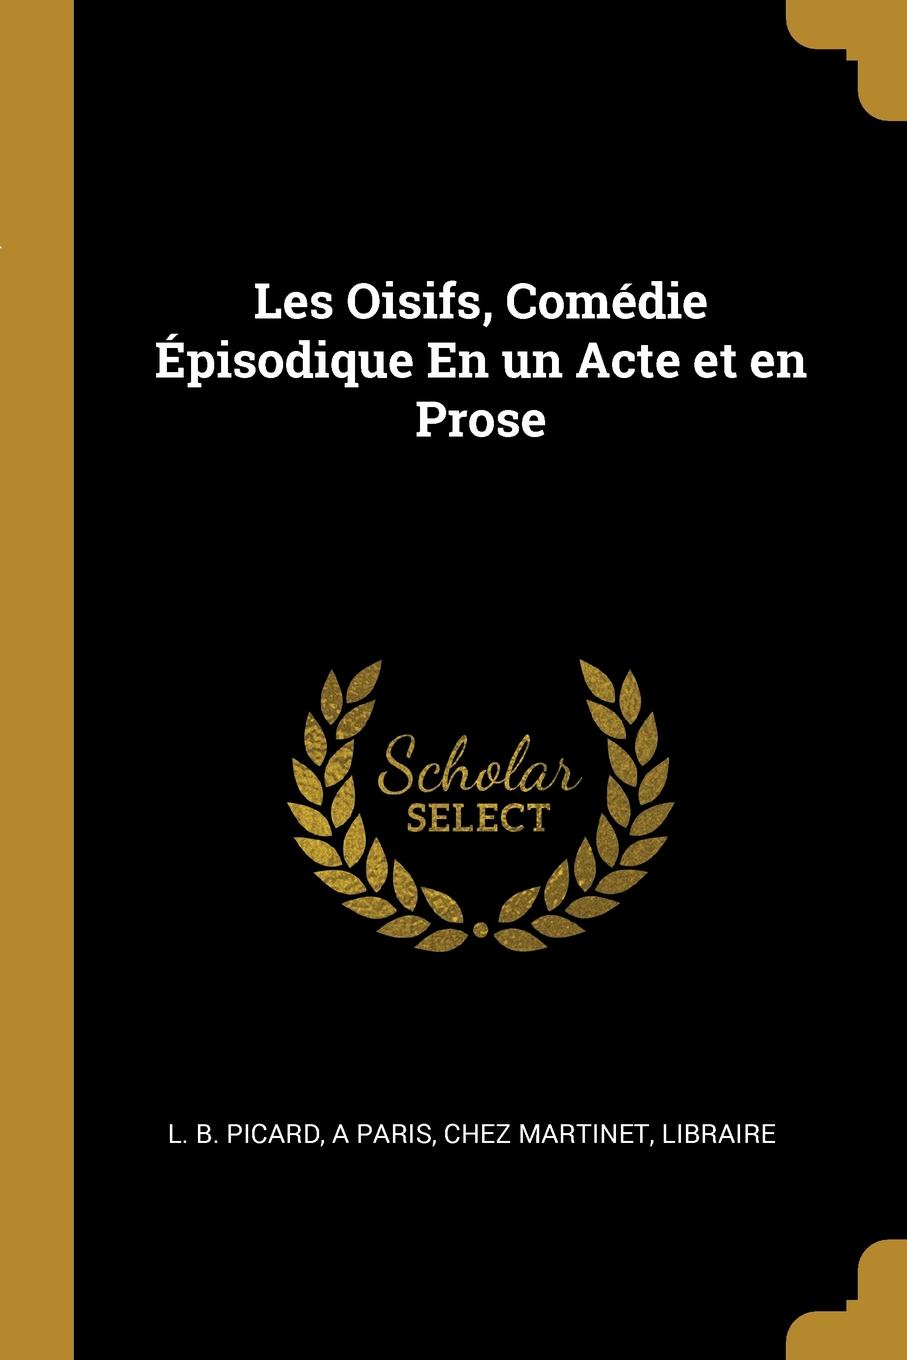 Les Oisifs, Comedie Episodique En un Acte et en Prose